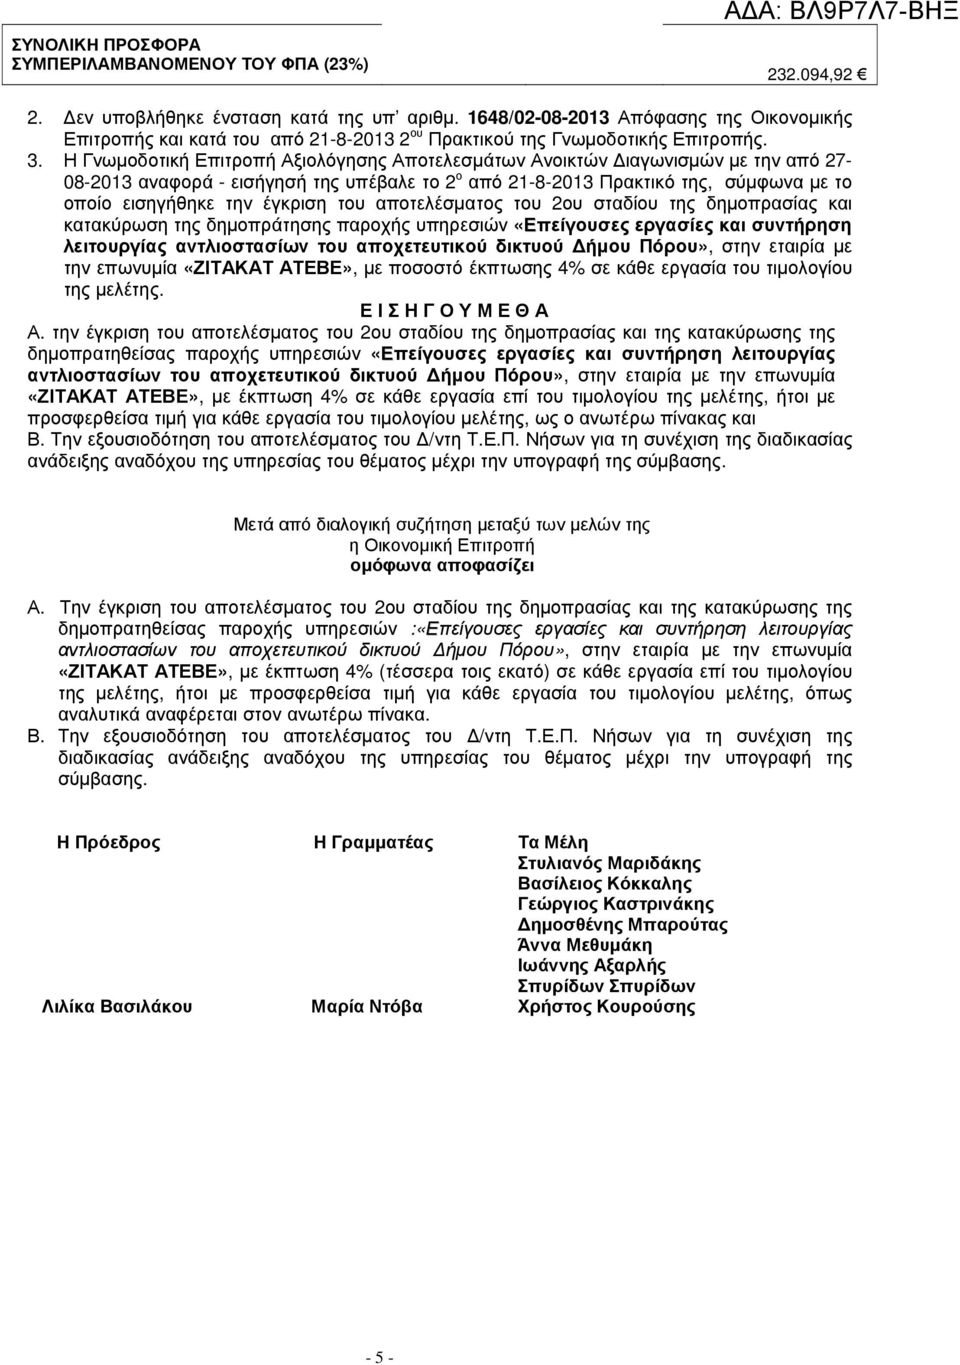 Η Γνωµοδοτική Επιτροπή Αξιολόγησης Αποτελεσµάτων Ανοικτών ιαγωνισµών µε την από 27-08-2013 αναφορά - εισήγησή της υπέβαλε το 2 ο από 21-8-2013 Πρακτικό της, σύµφωνα µε το οποίο εισηγήθηκε την έγκριση